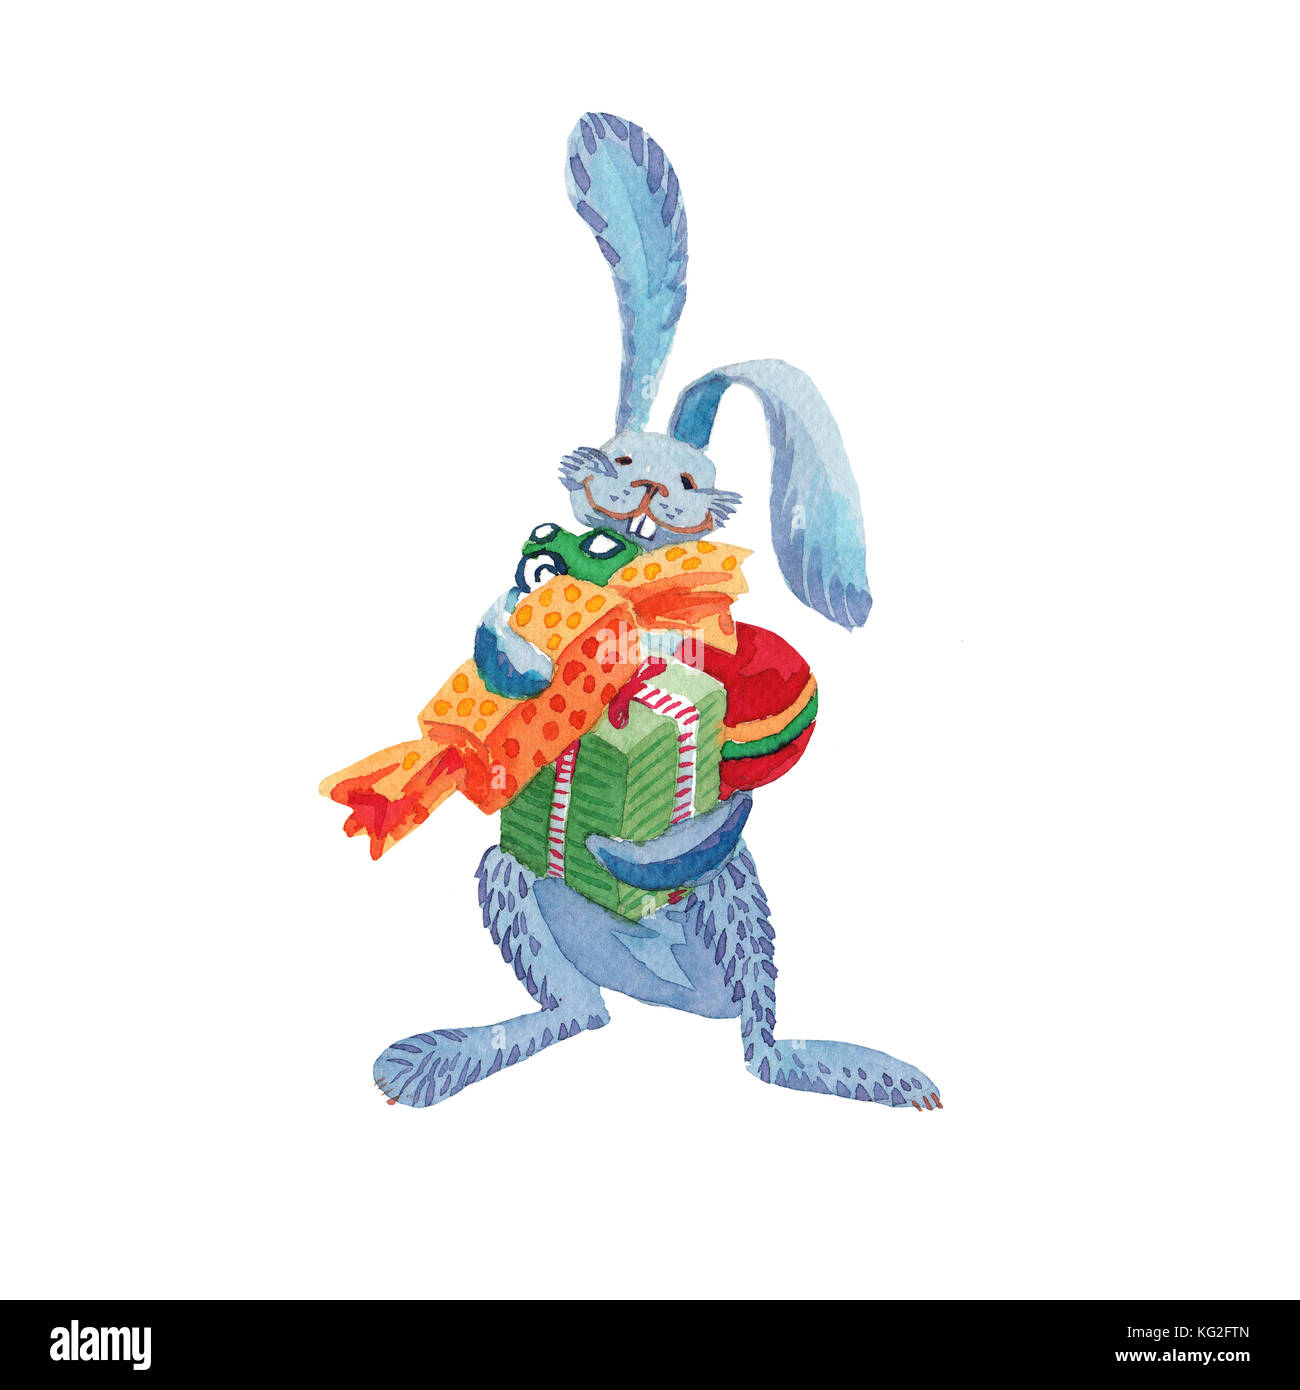 Conejo liebre azul tiene regalos para Navidad Foto de stock